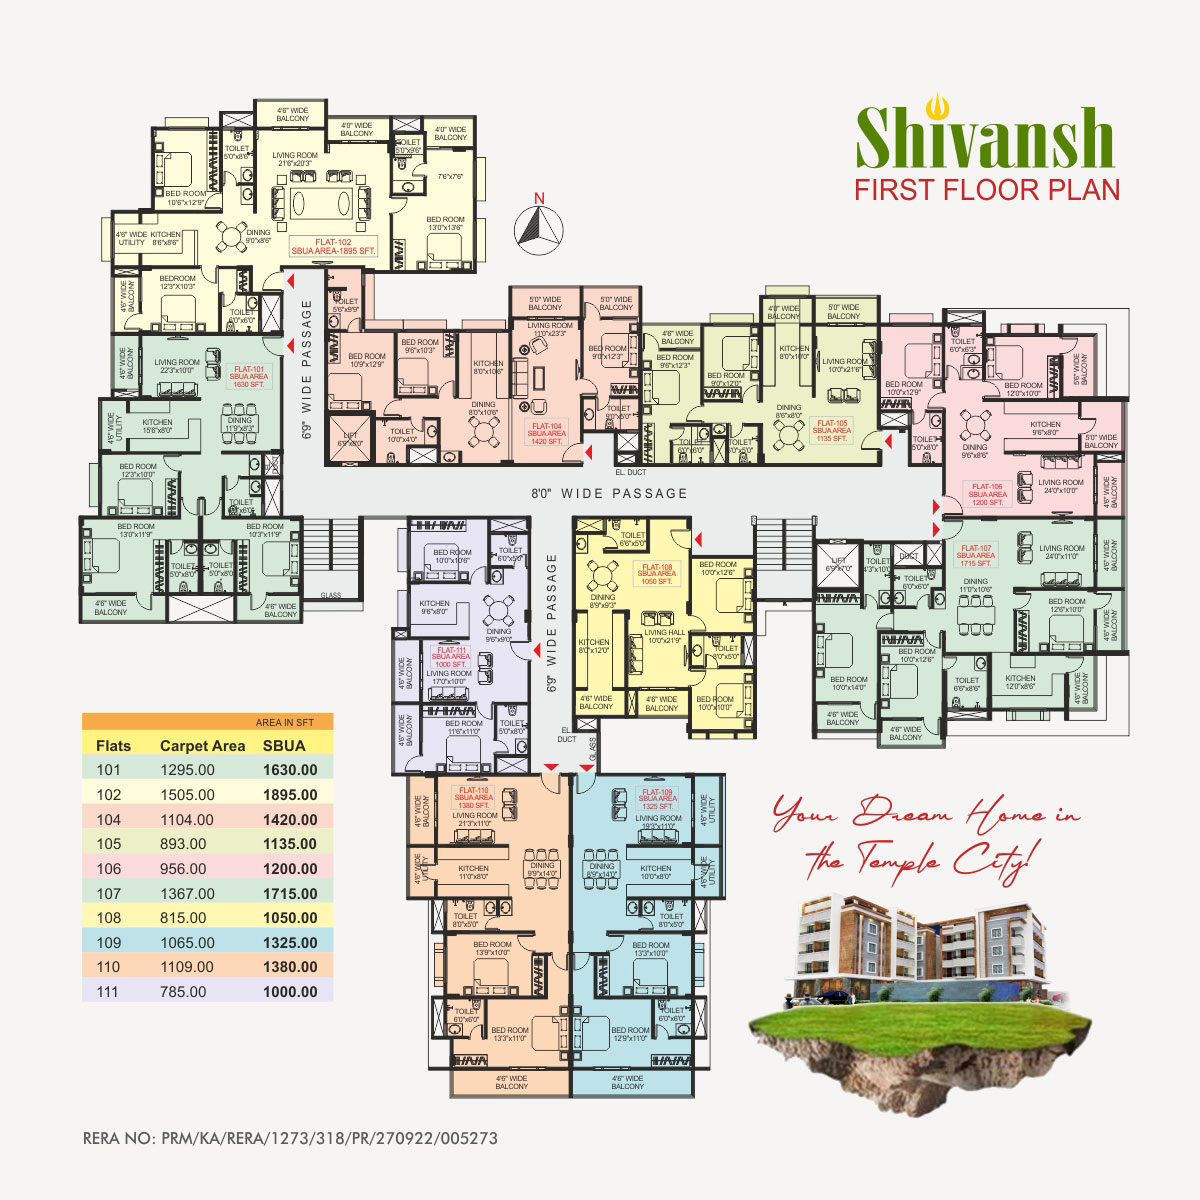 Shivansh Udupi First Floor Plan